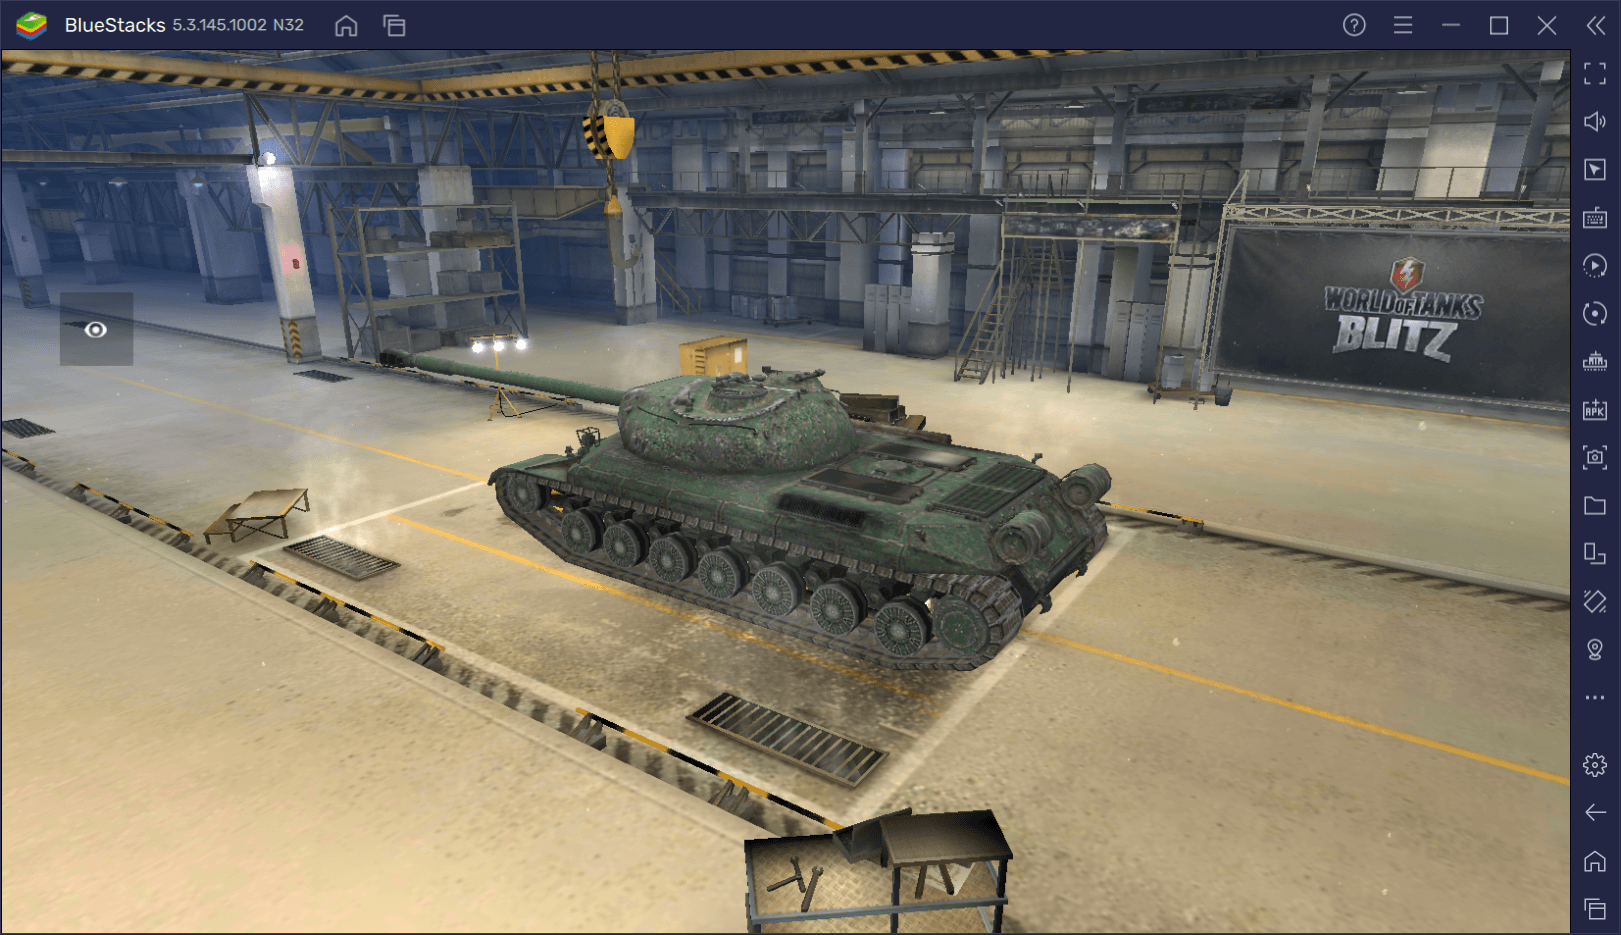 Гайд по премиумному танку WZ-111 в World of Tanks Blitz. Озбор характеристик, достоинств и тактик игры